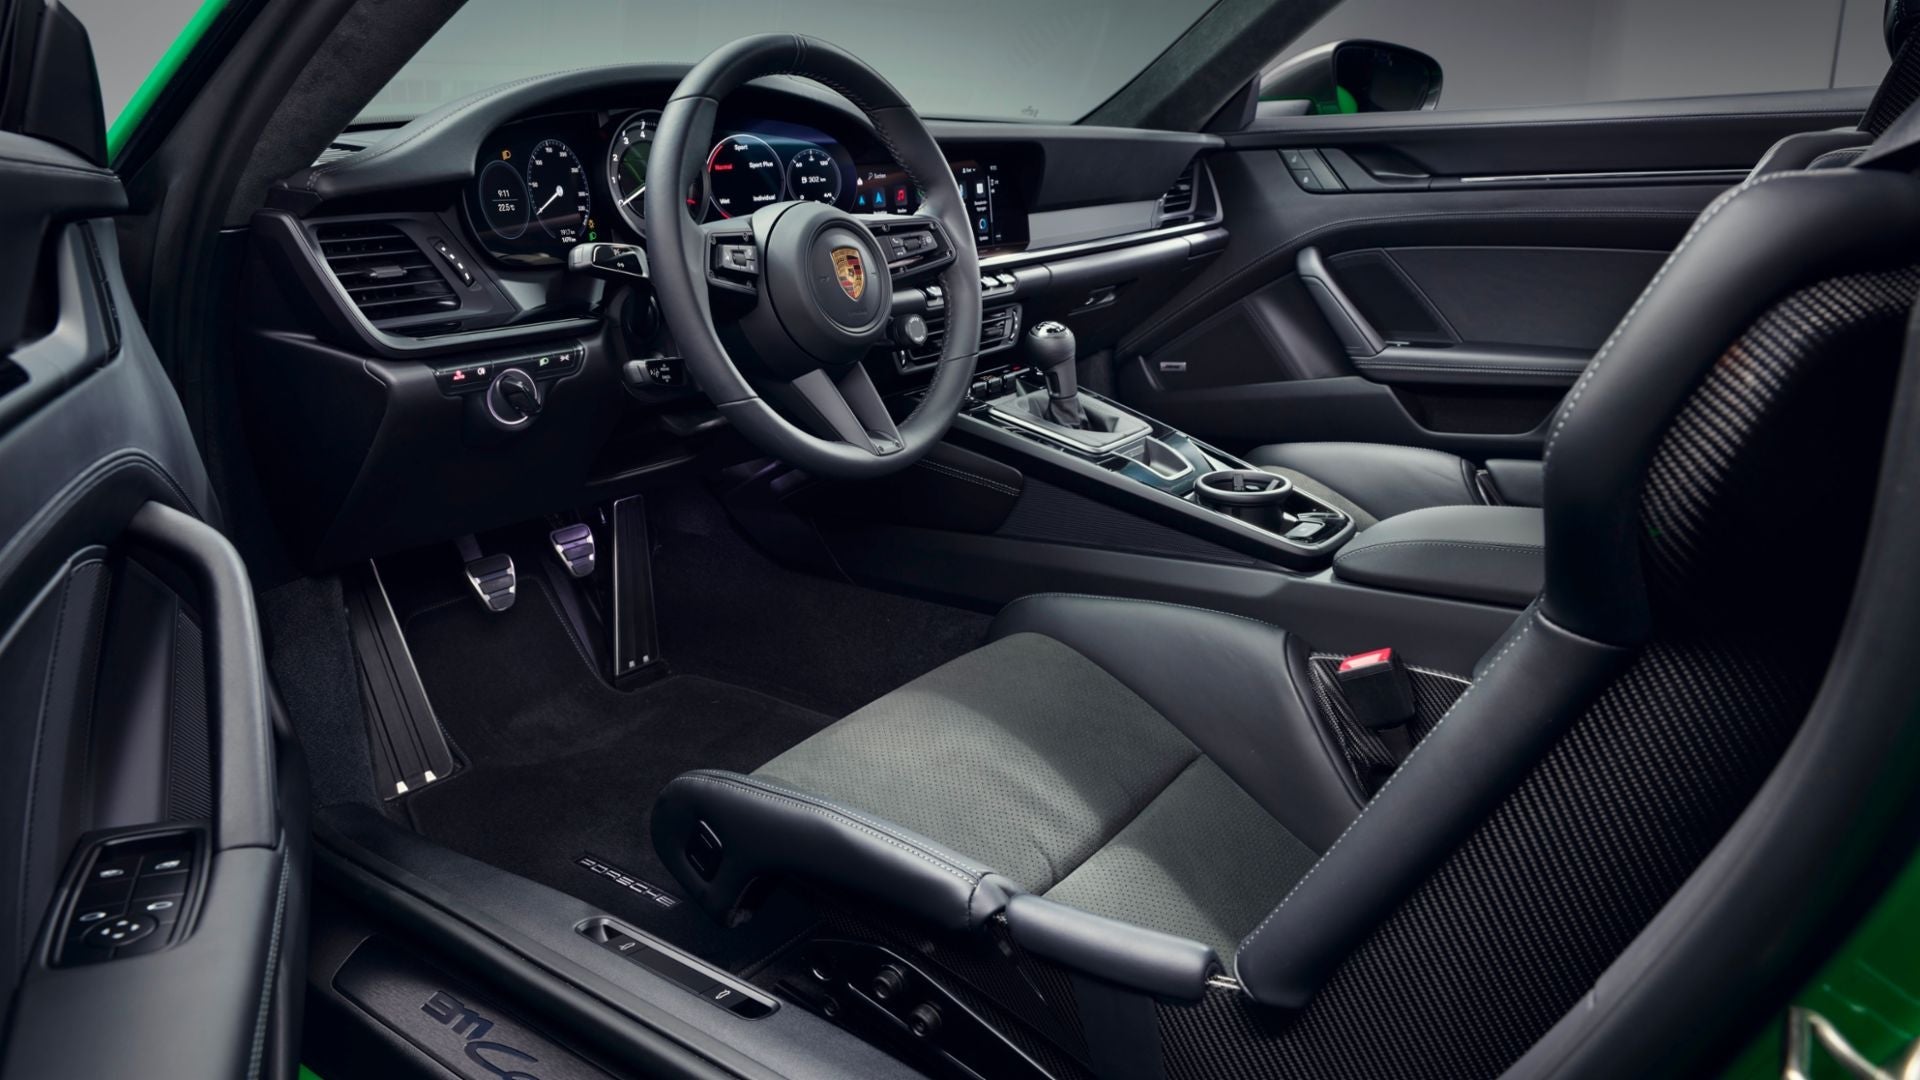 2023 Porsche 911 Dakar interior and technology Sugar Land TX